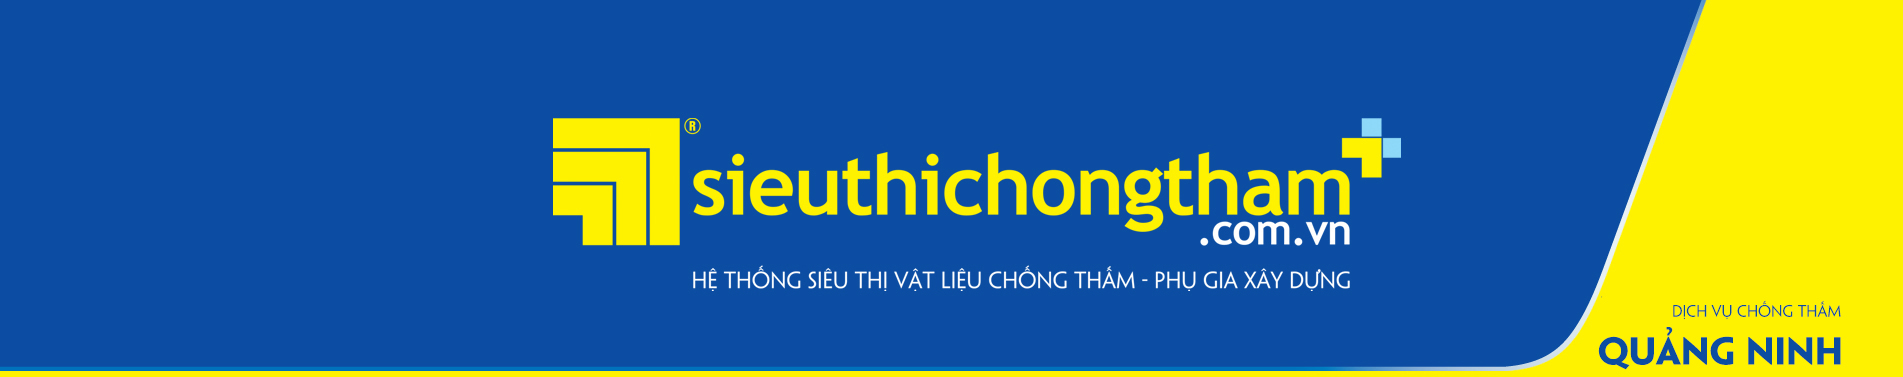 Dich Vu Chong Tham Quang Ninh